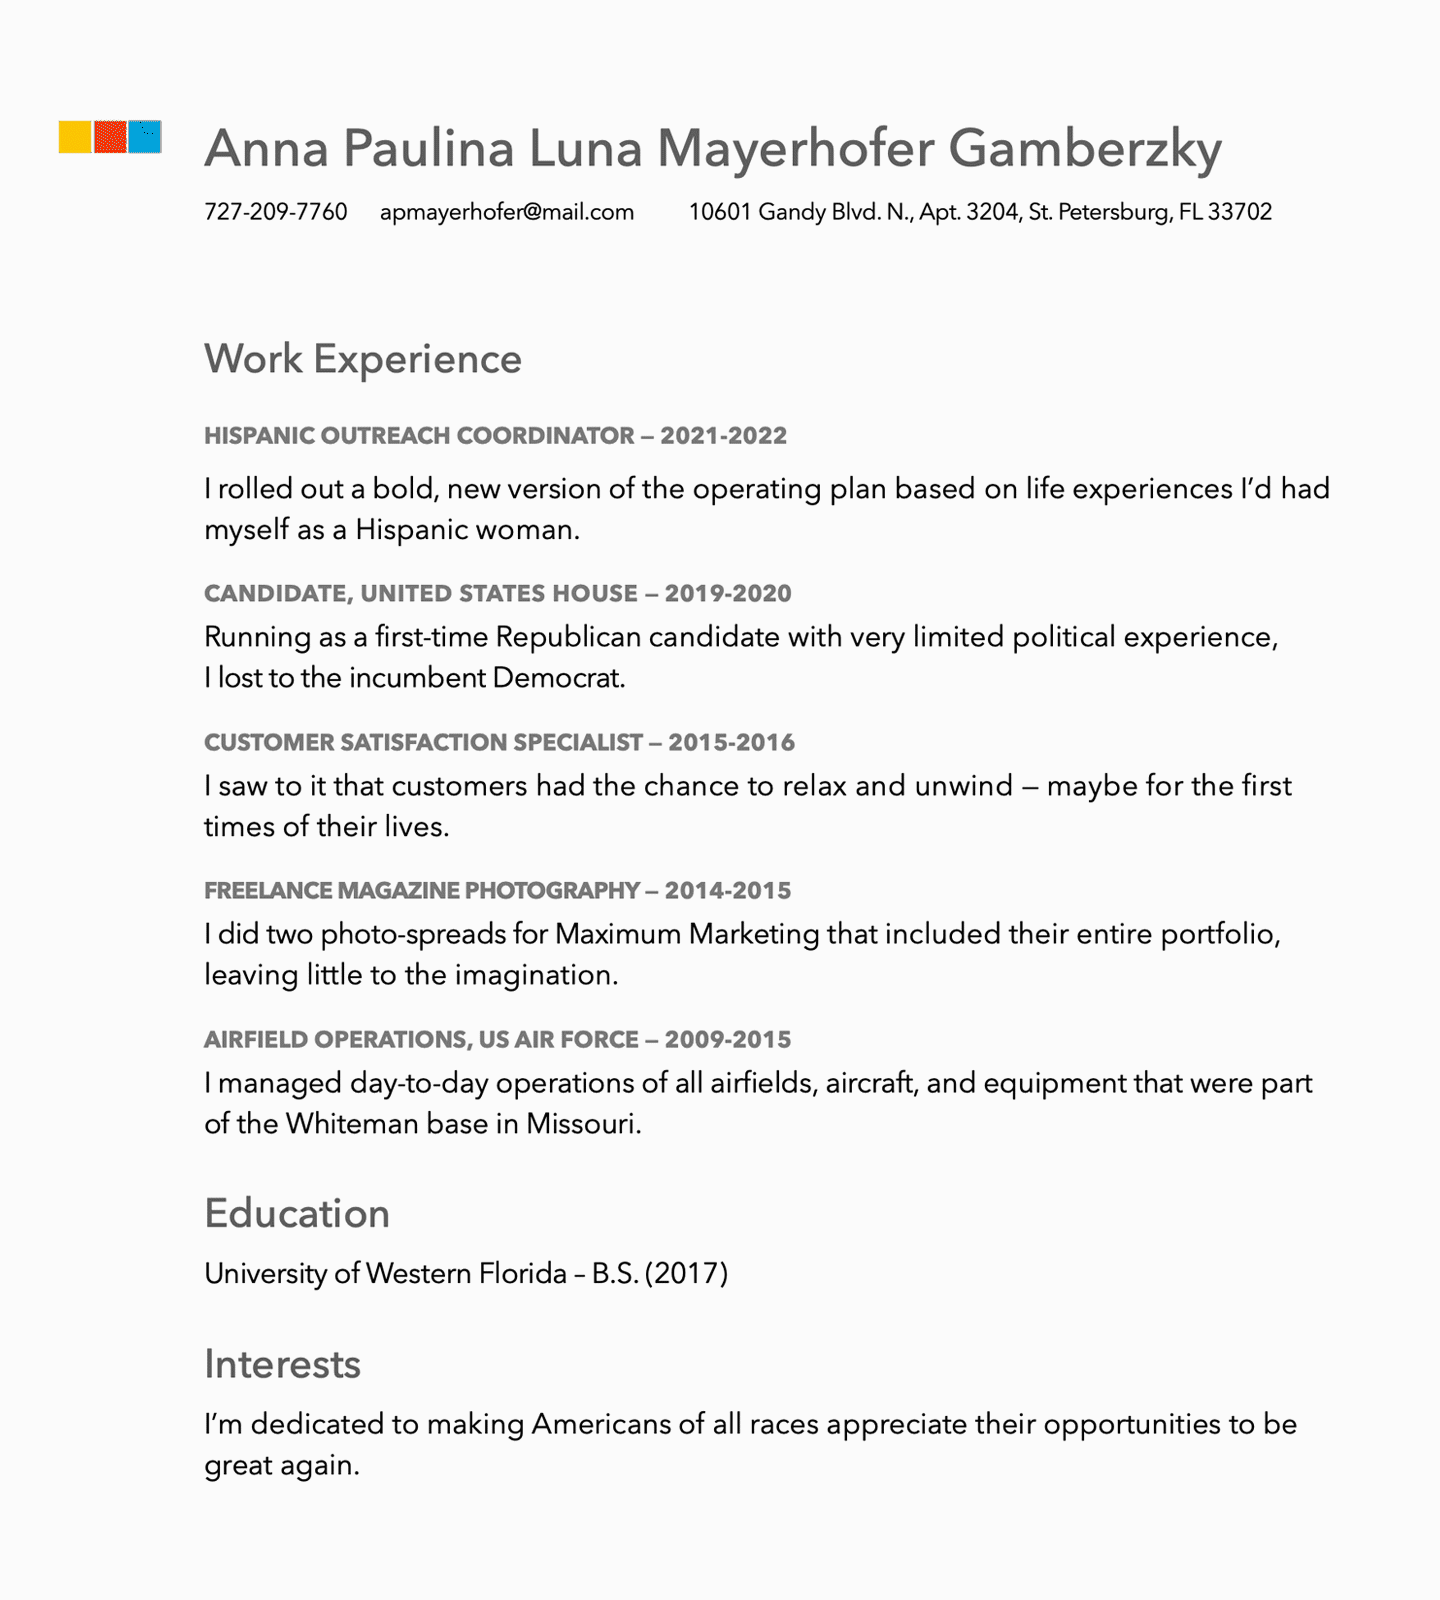 Anna Paulina Luna's resume